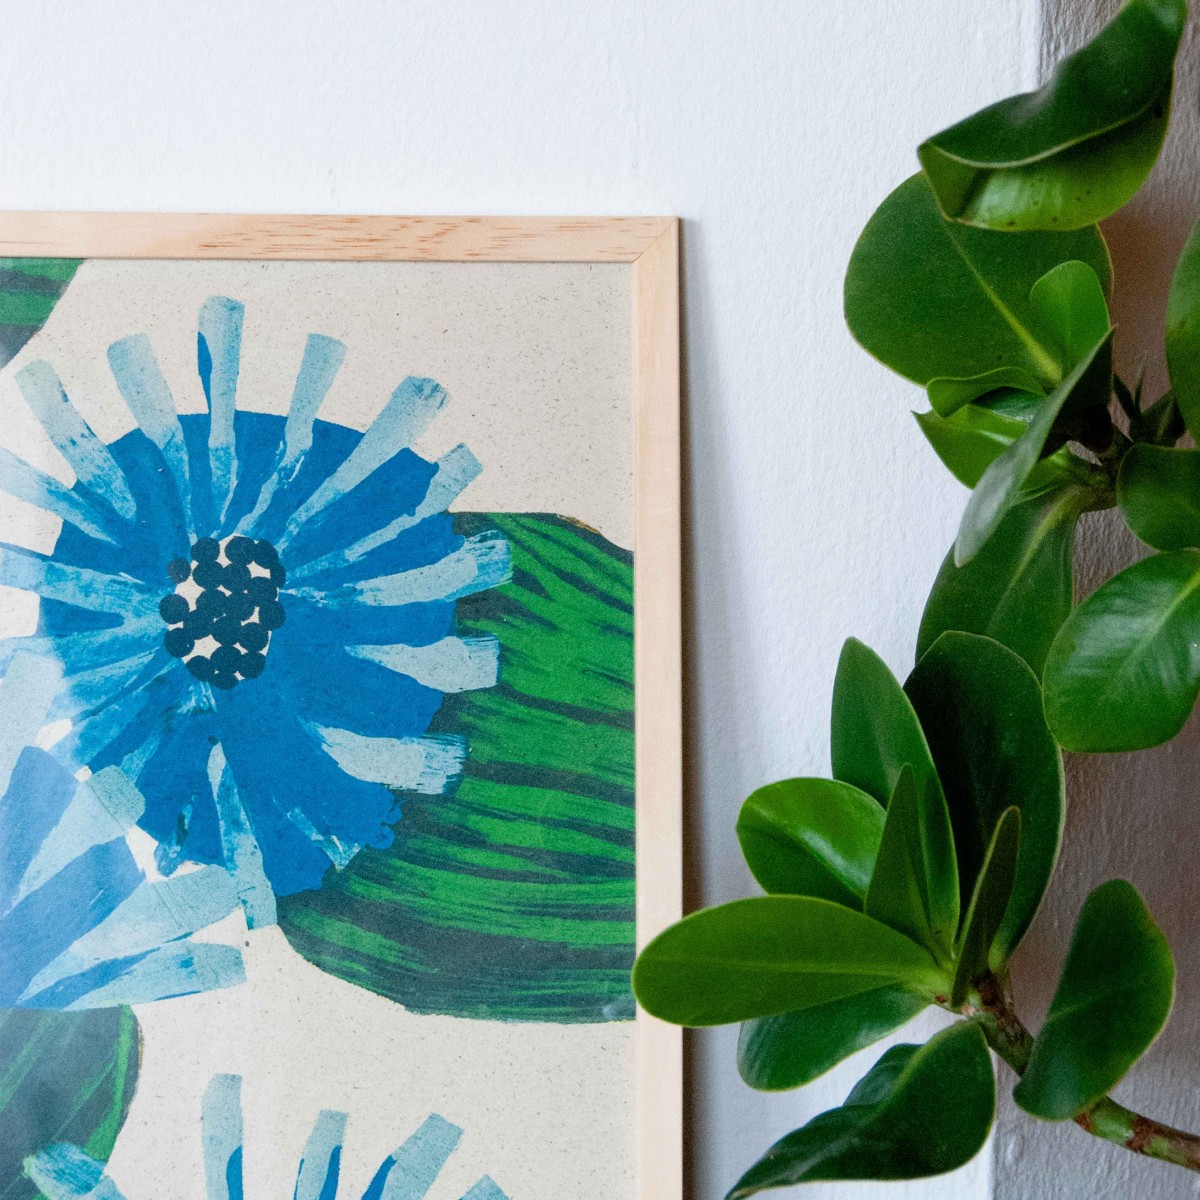 formwiese »Mohnblumen« (nachhaltiges A3 Poster, Graspapier, Blumen, Pflanzen, Mohn, Kunstdruck limitiert)